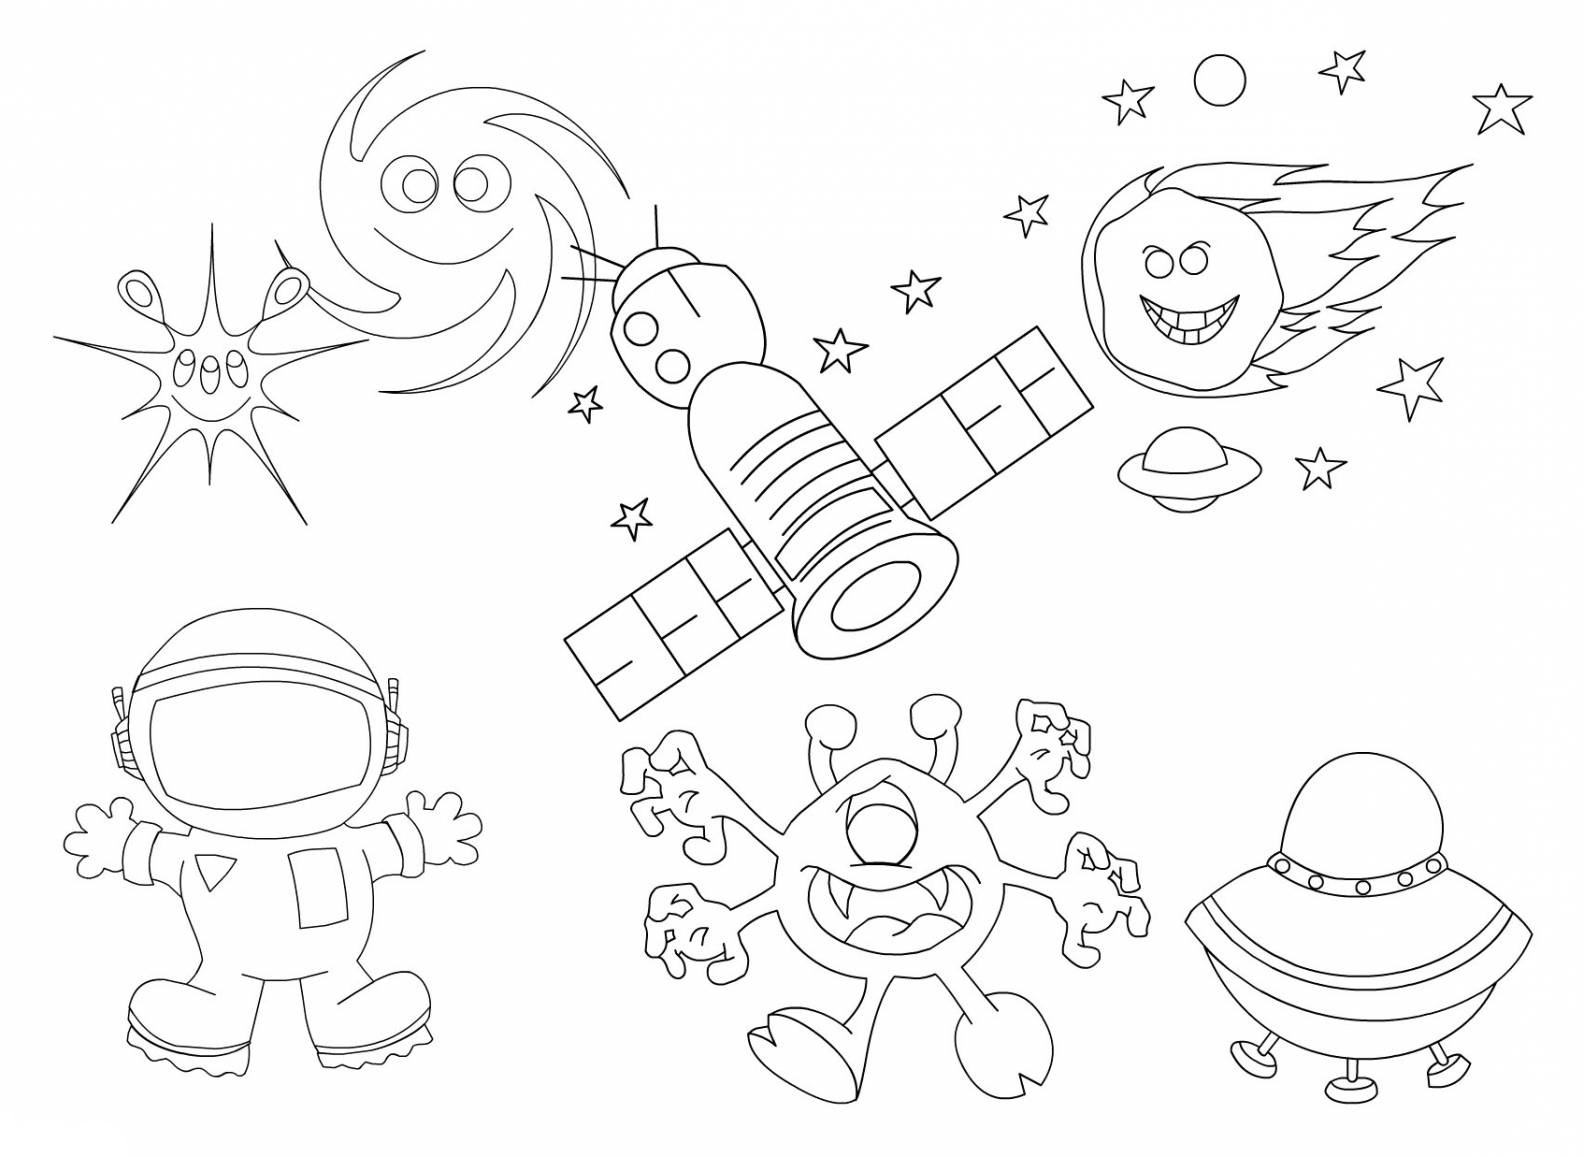 Космос. Раскраски космос, космонавты, звезды, планеты. Развивающие раскраски для детей. Раскраски космос.  Раскраски обучалки для детей. Скачать раскраски космос. 